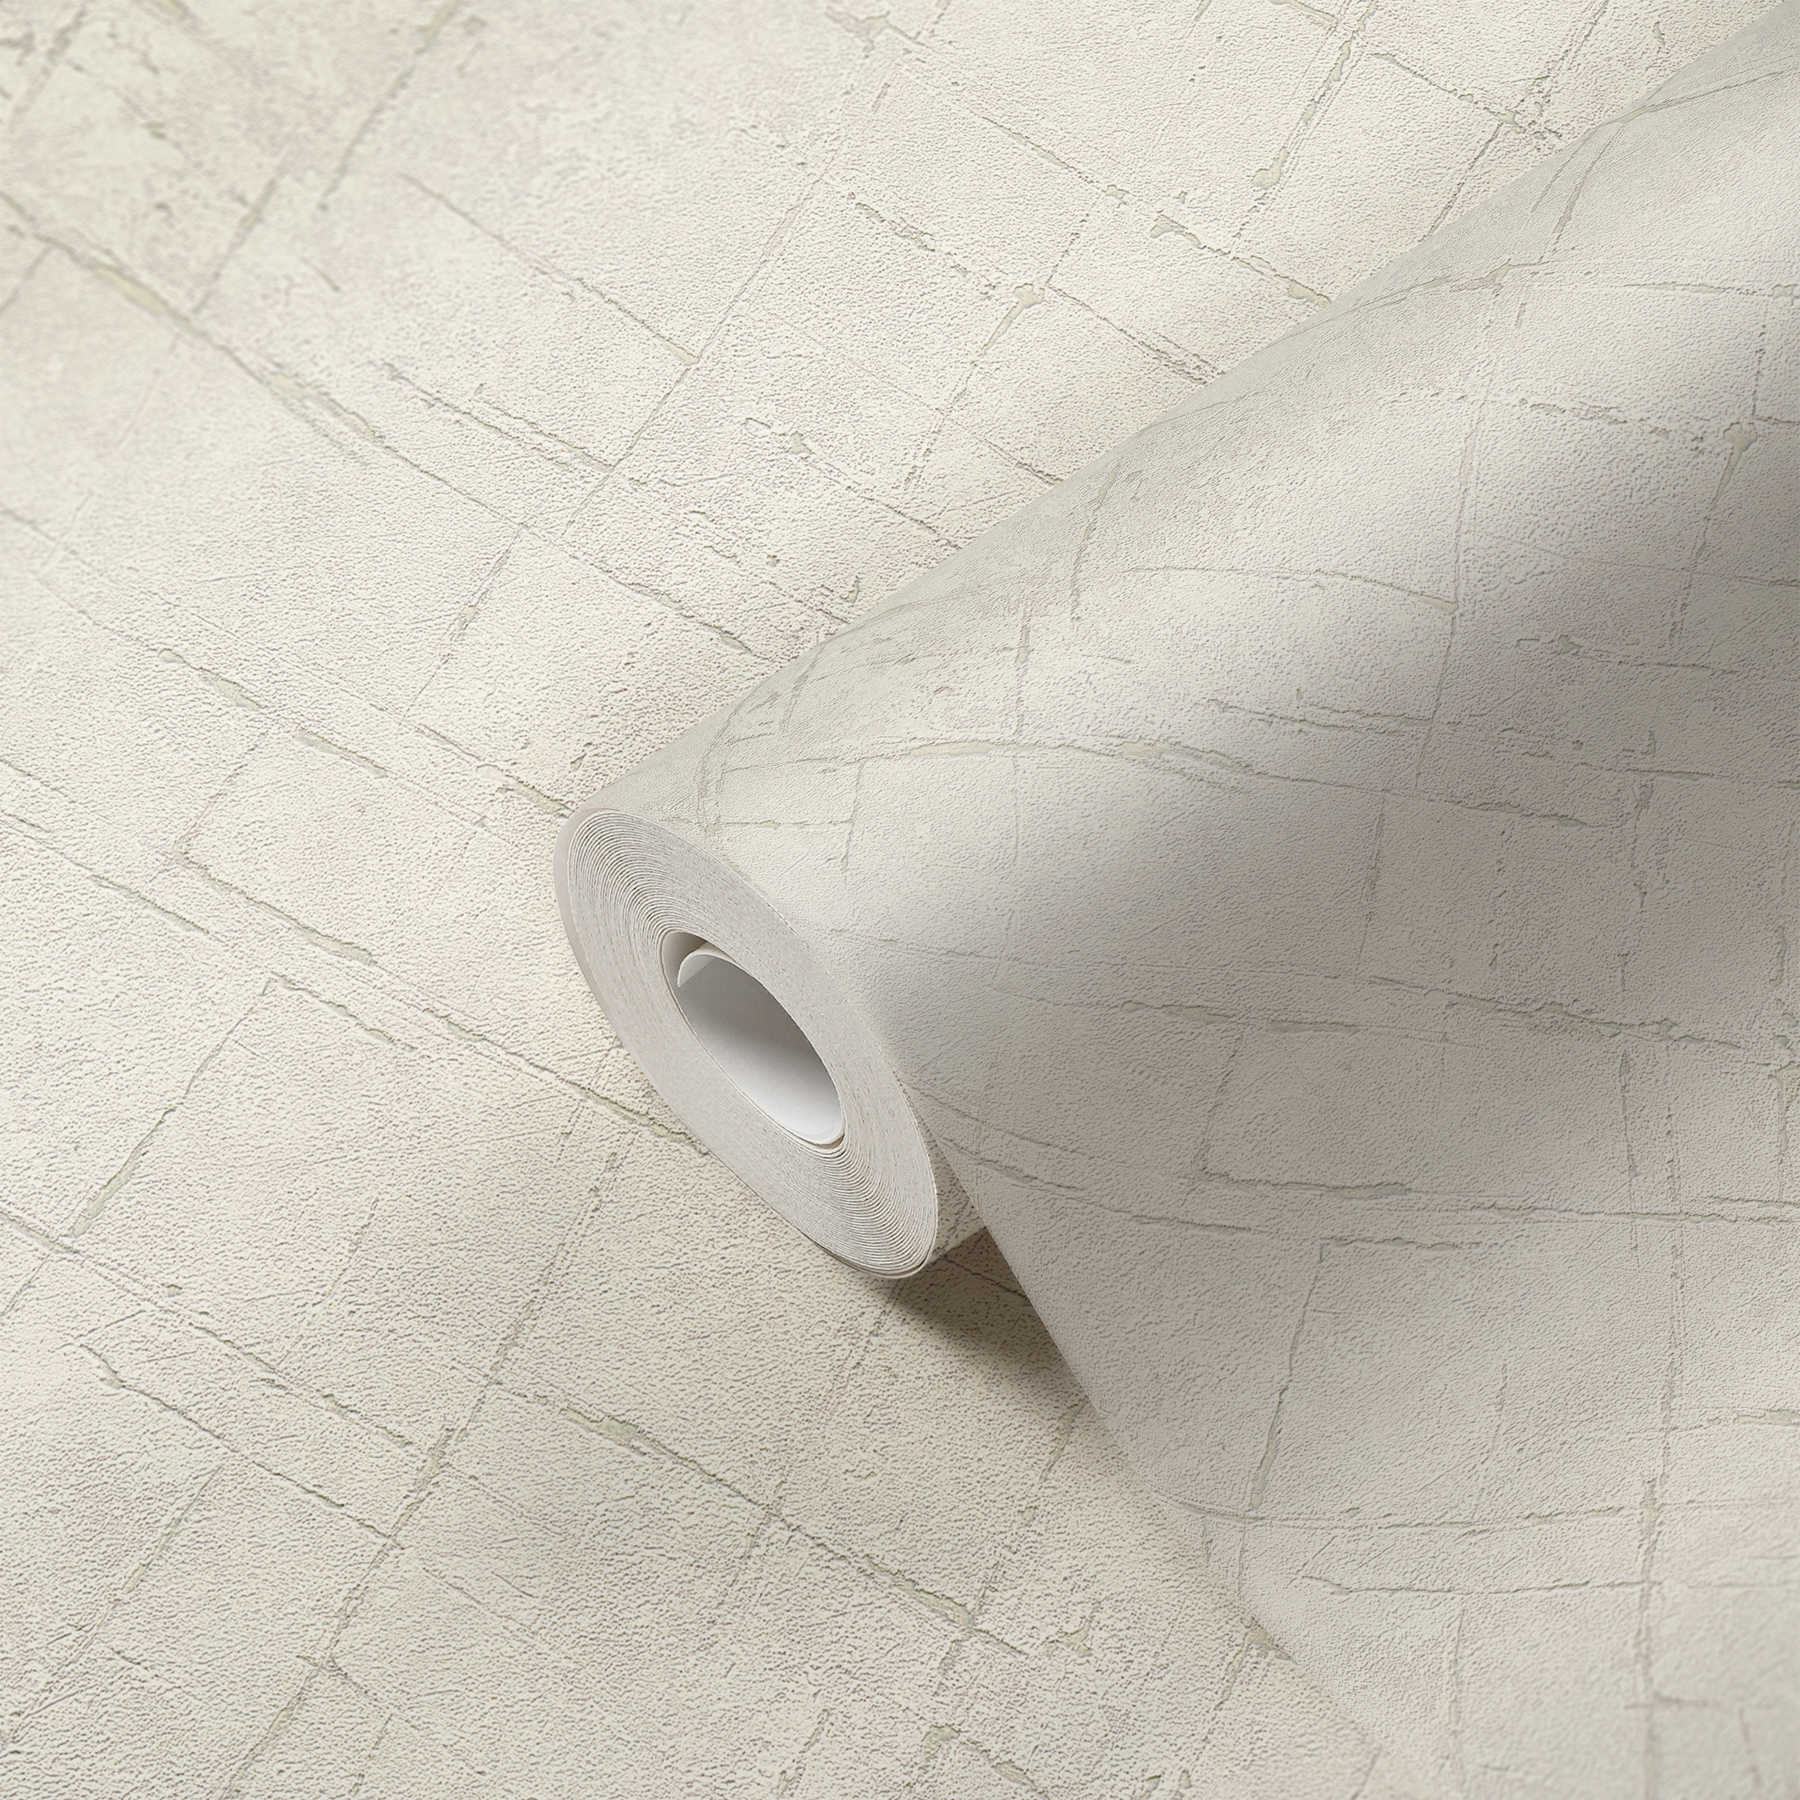             Papier peint intissé aspect plâtre dans le look usé - blanc, gris
        